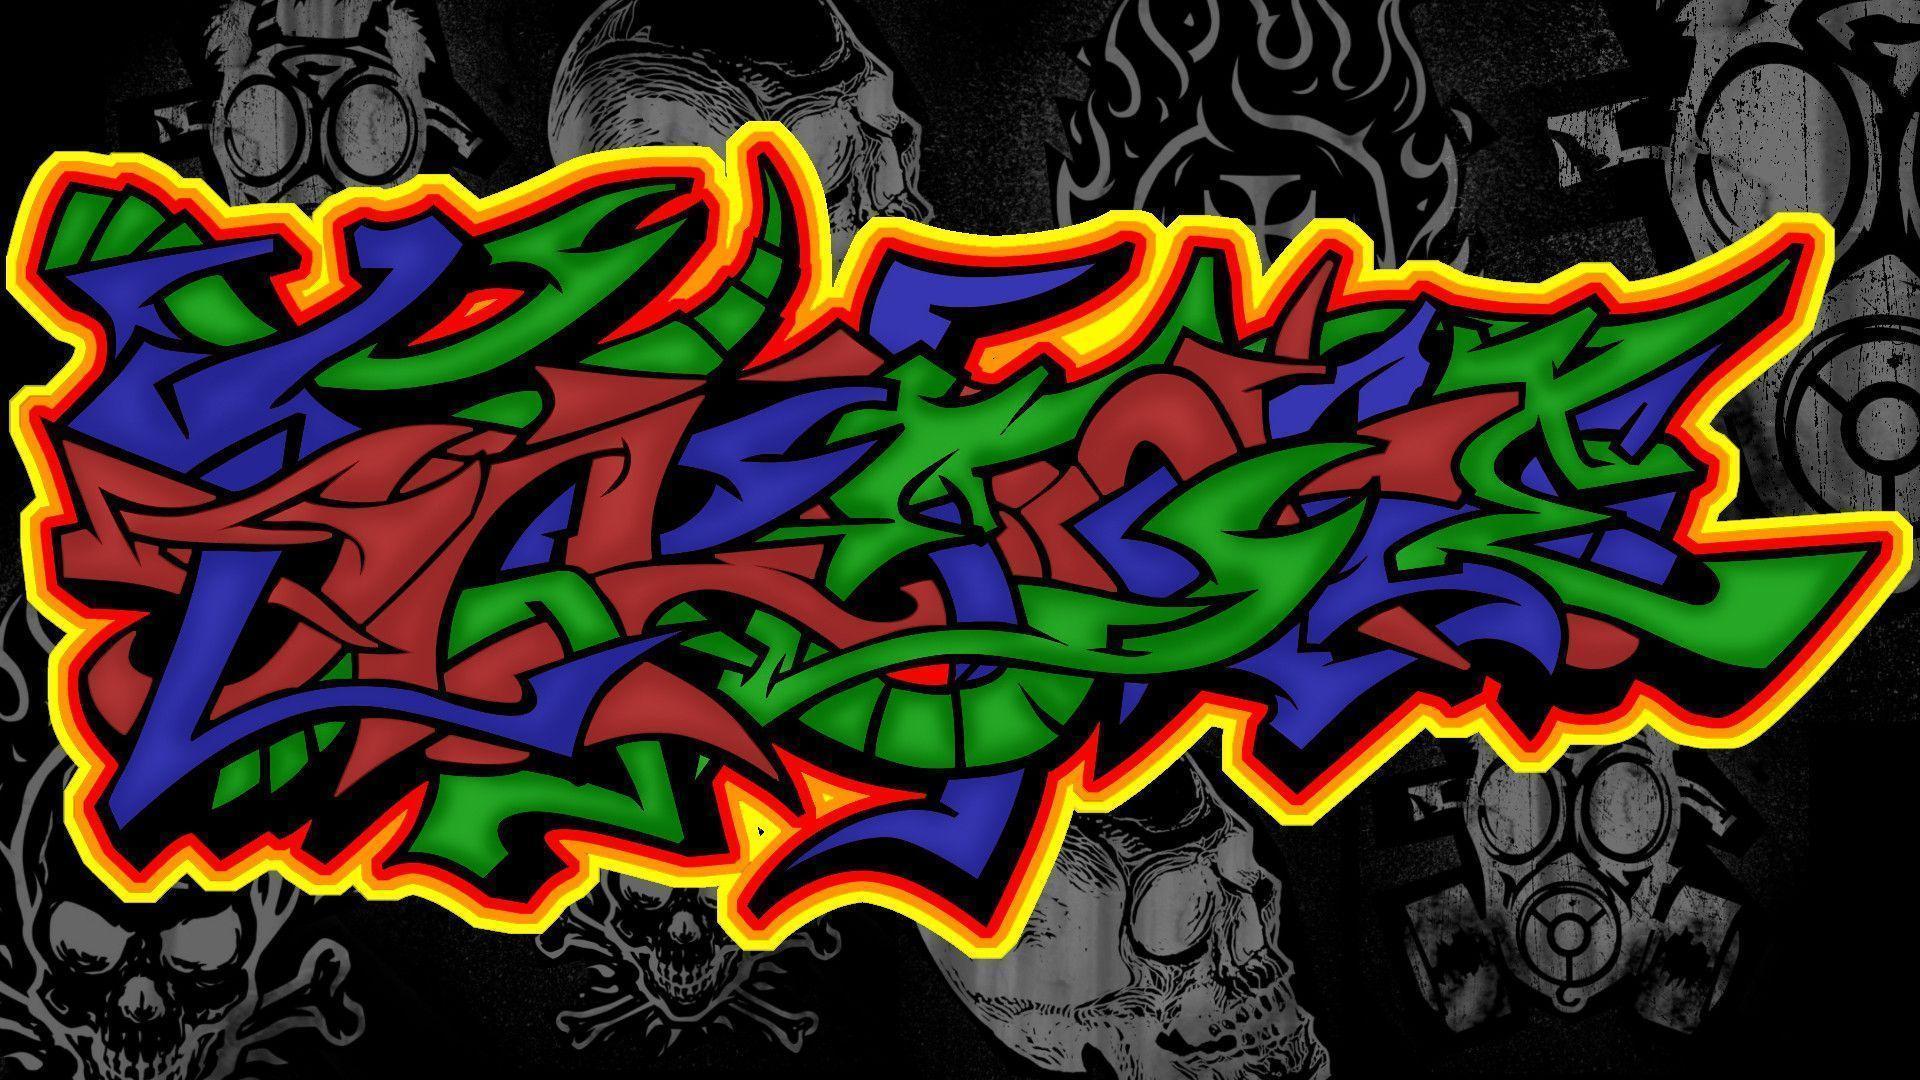 Graffiti Wallpaper 1080p, wallpaper, Graffiti Wallpaper 1080p HD